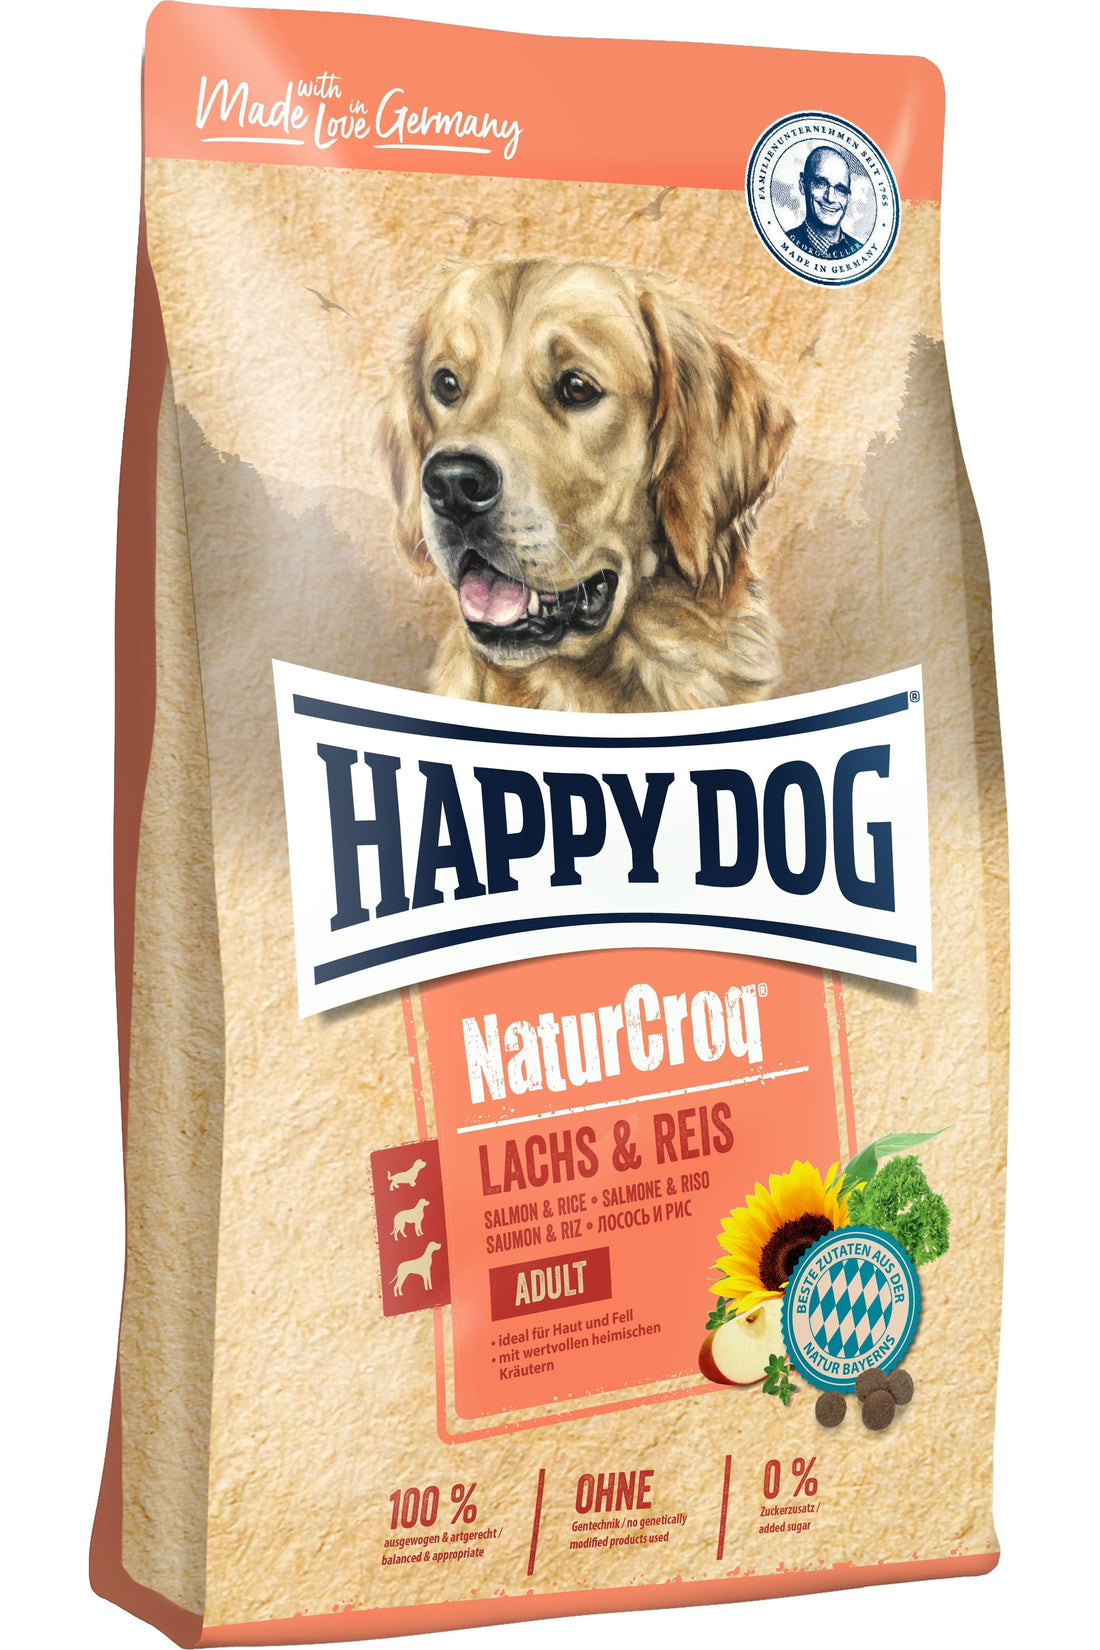 Happy Dog NaturCroq Laks og Ris - AV-Larsen